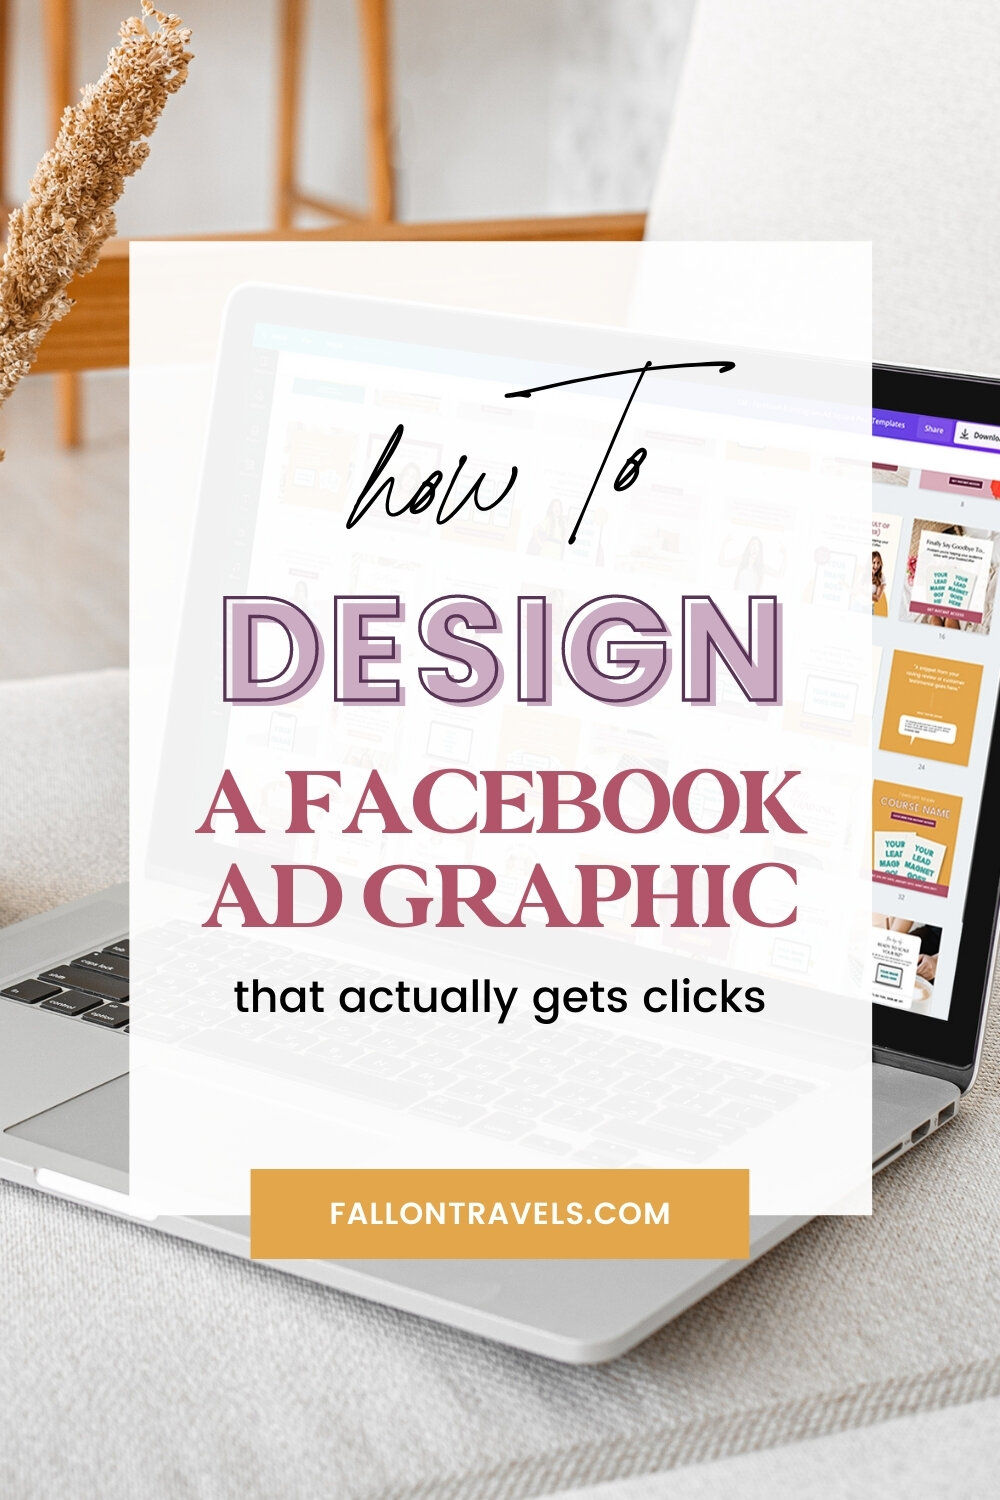 How to design a Facebook Ad | FallonTravels.com